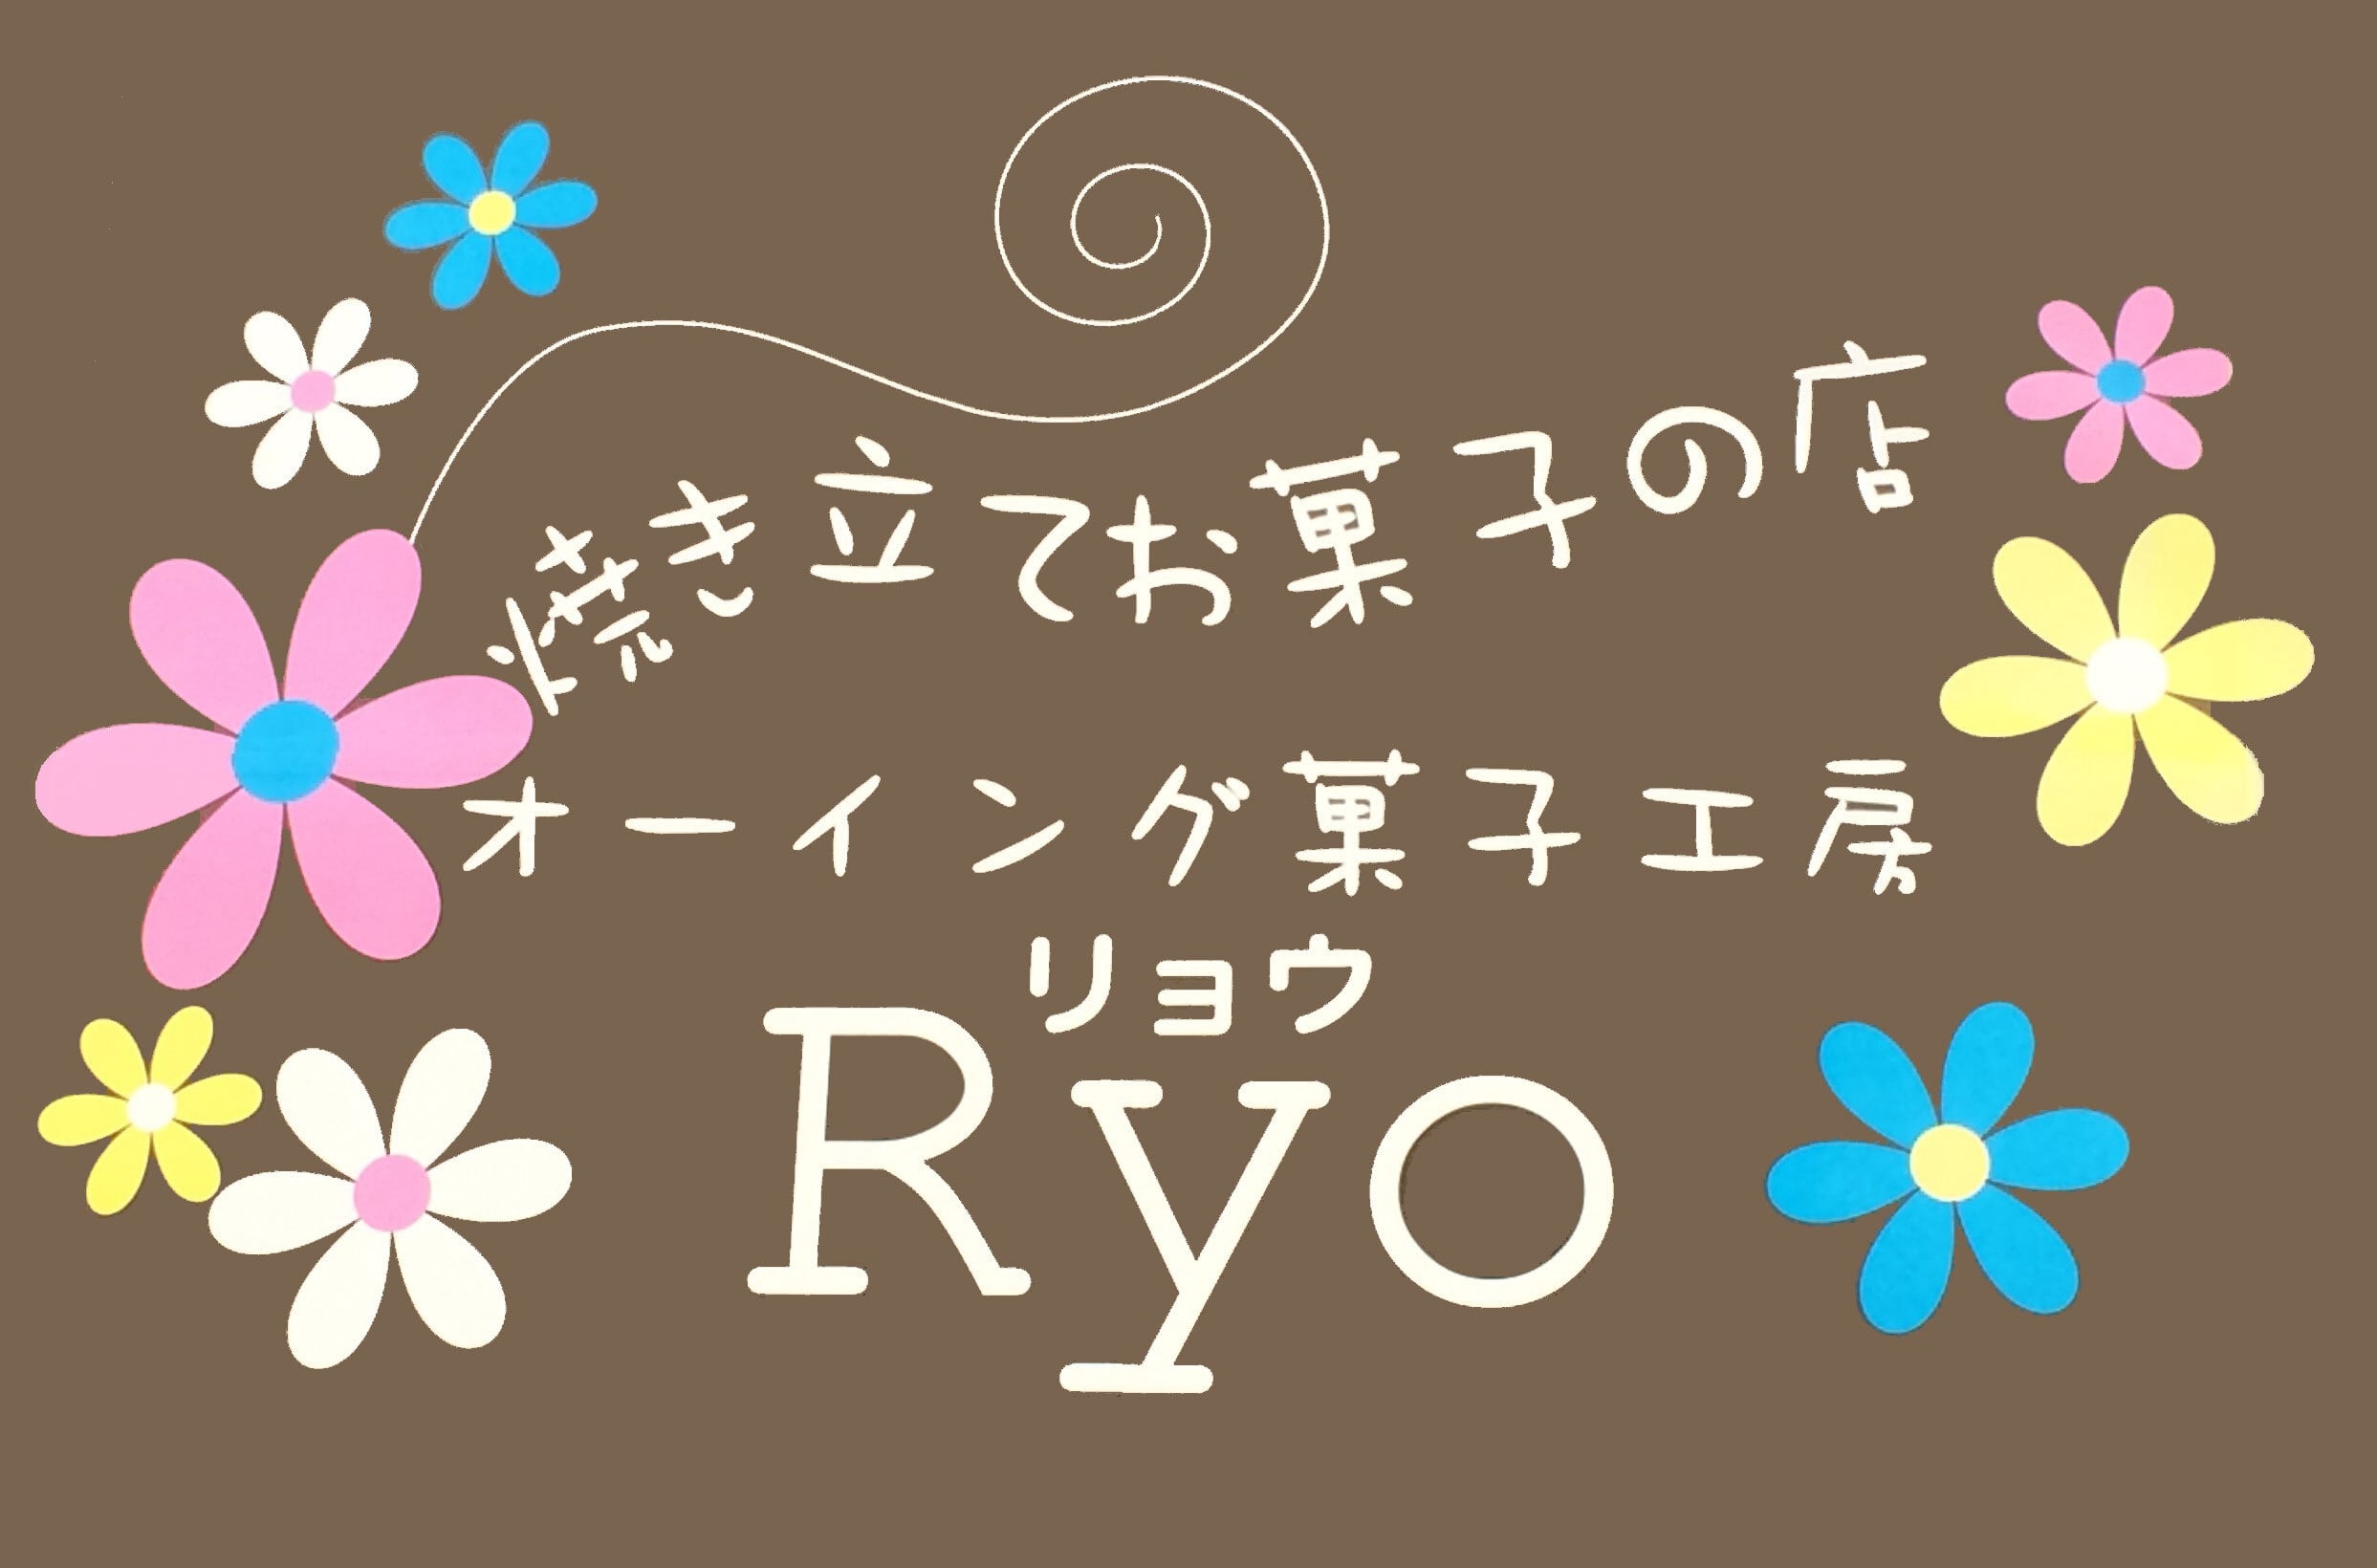 オーイング菓子工房Ryo